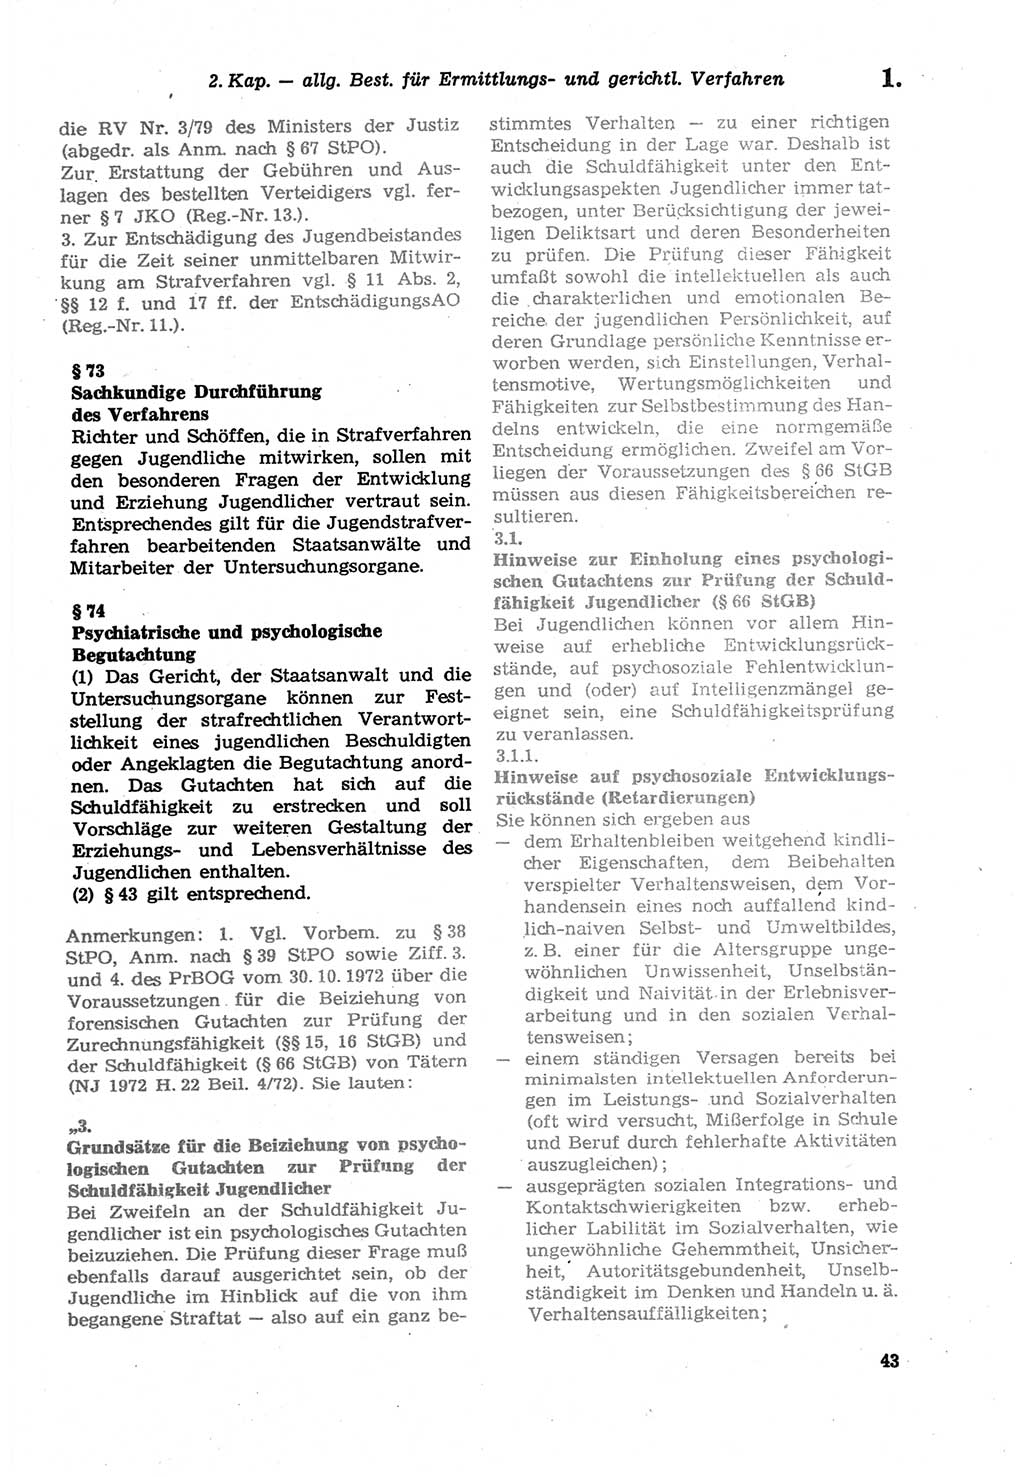 Strafprozeßordnung (StPO) der Deutschen Demokratischen Republik (DDR) sowie angrenzende Gesetze und Bestimmungen 1979, Seite 43 (StPO DDR Ges. Best. 1979, S. 43)